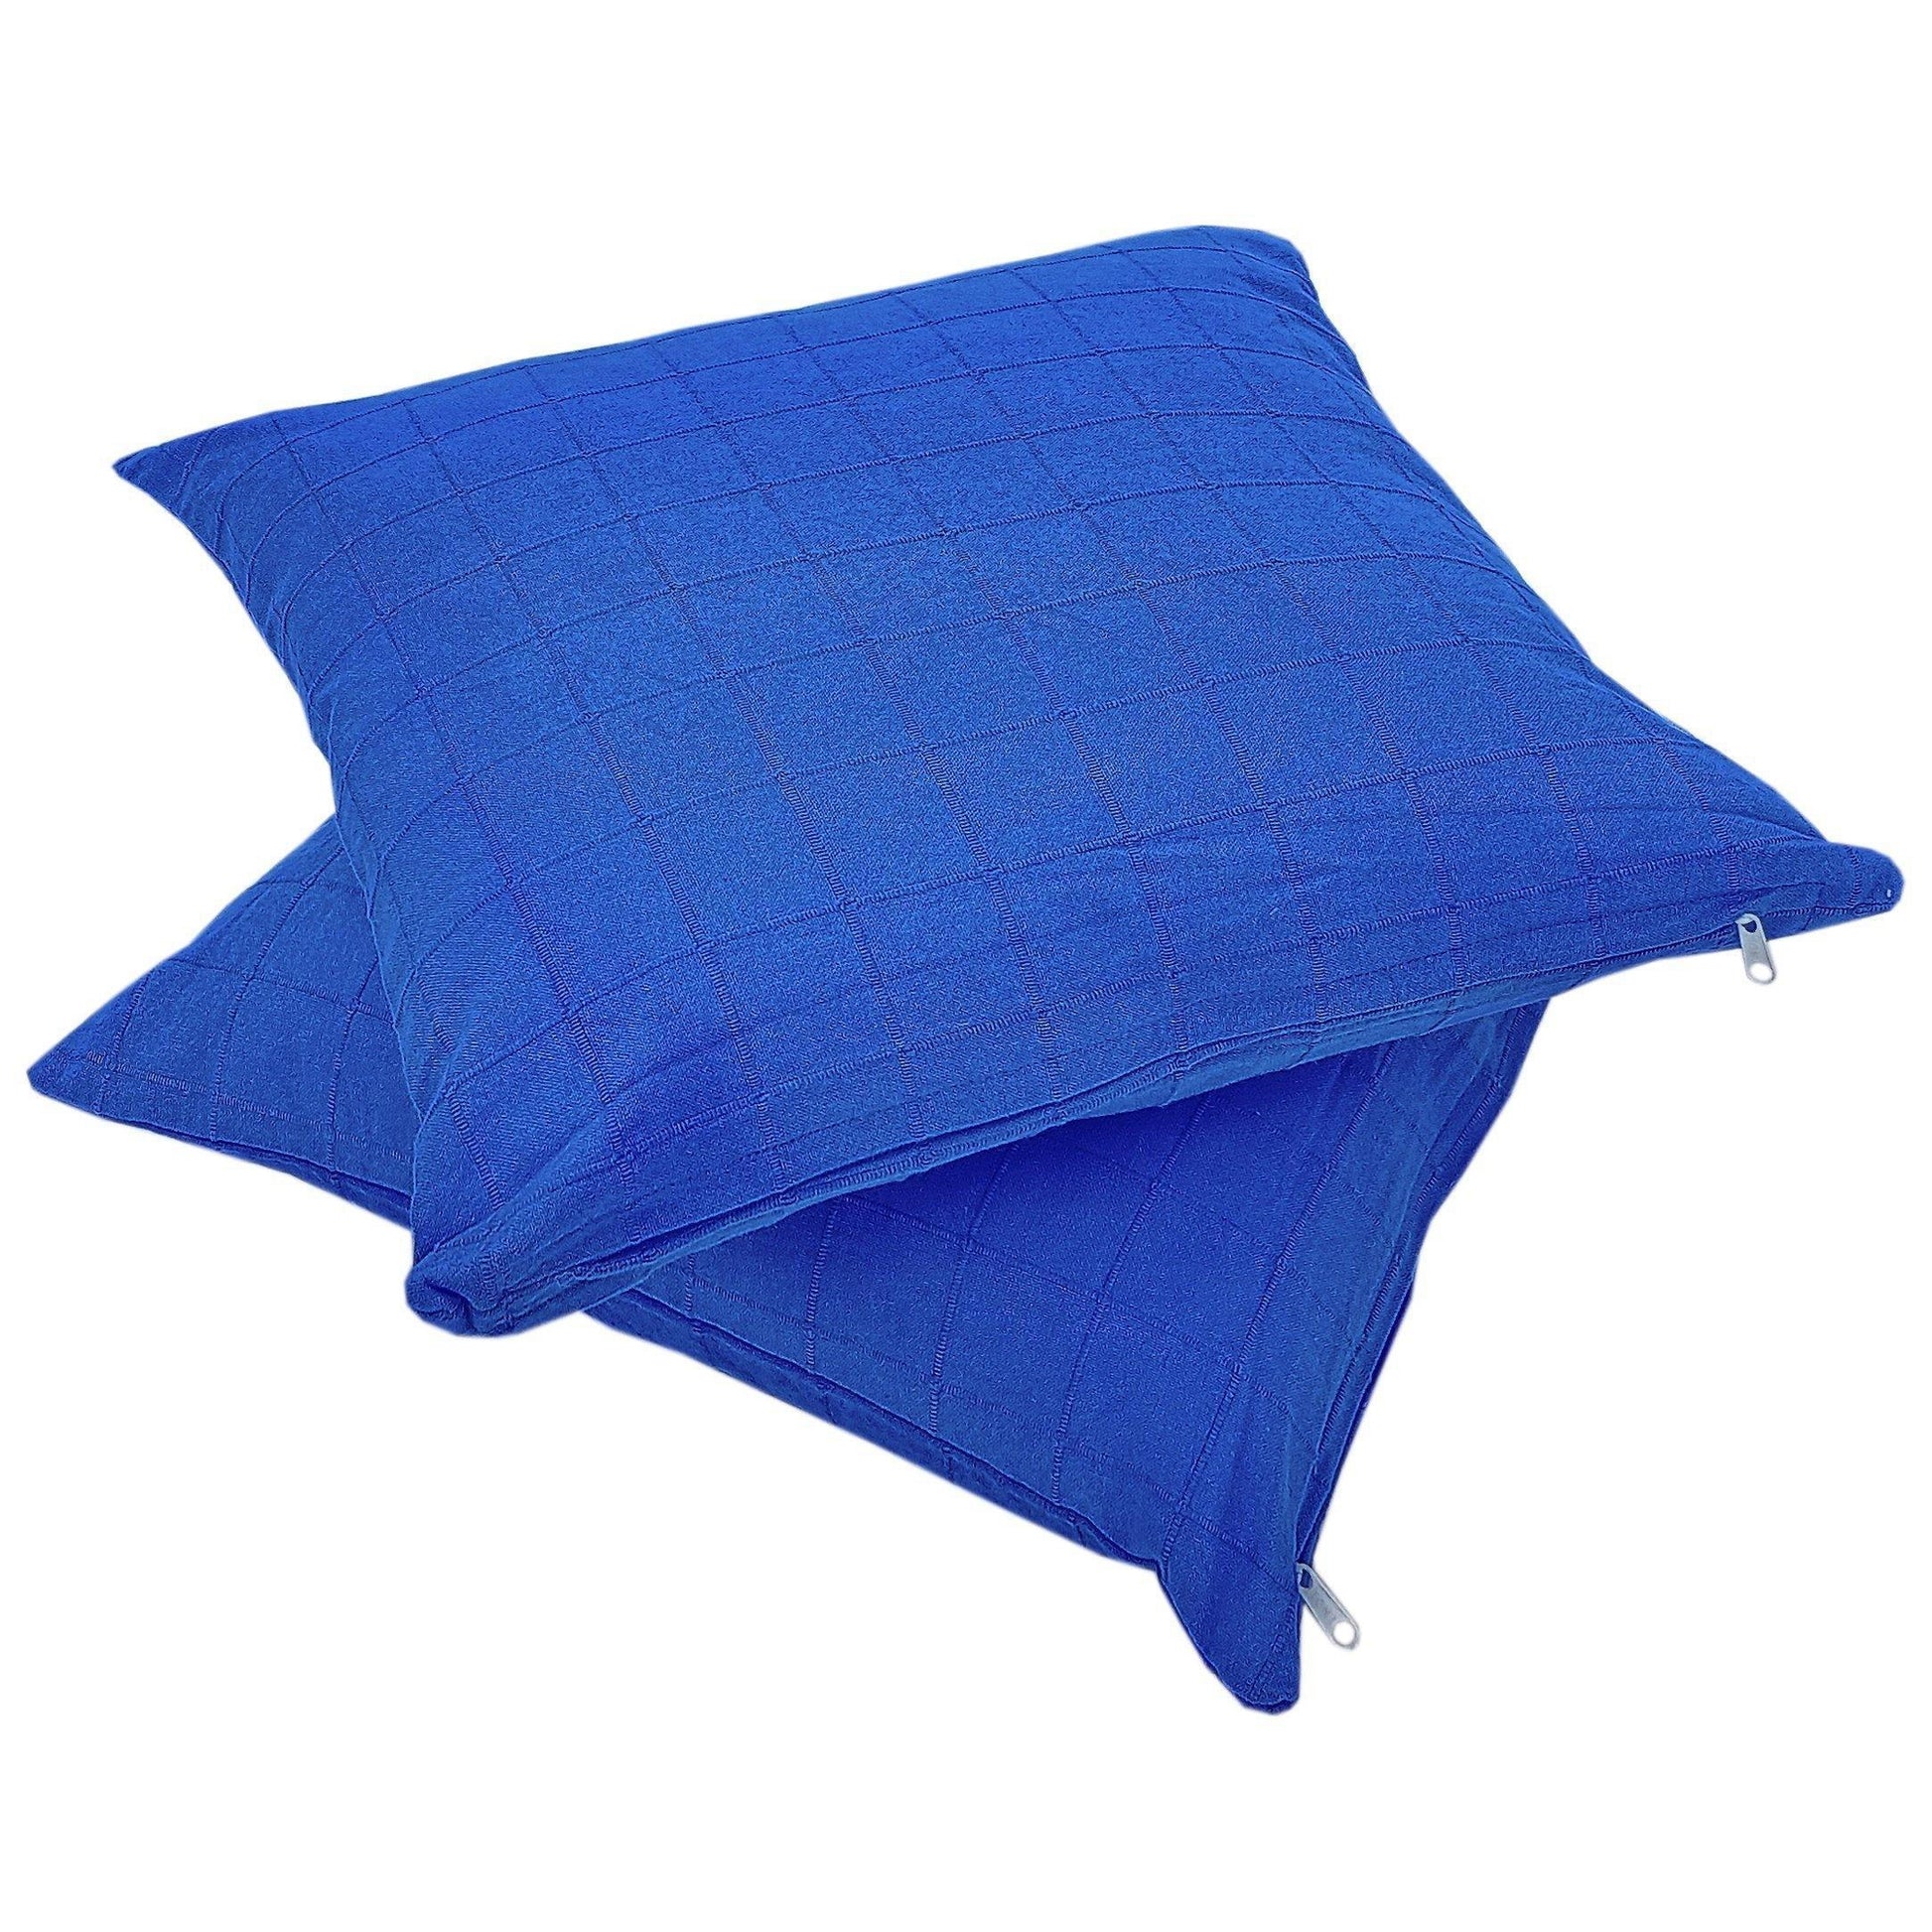 18" Blue Checkered Cotton Cushion Cover - The Teal Thread